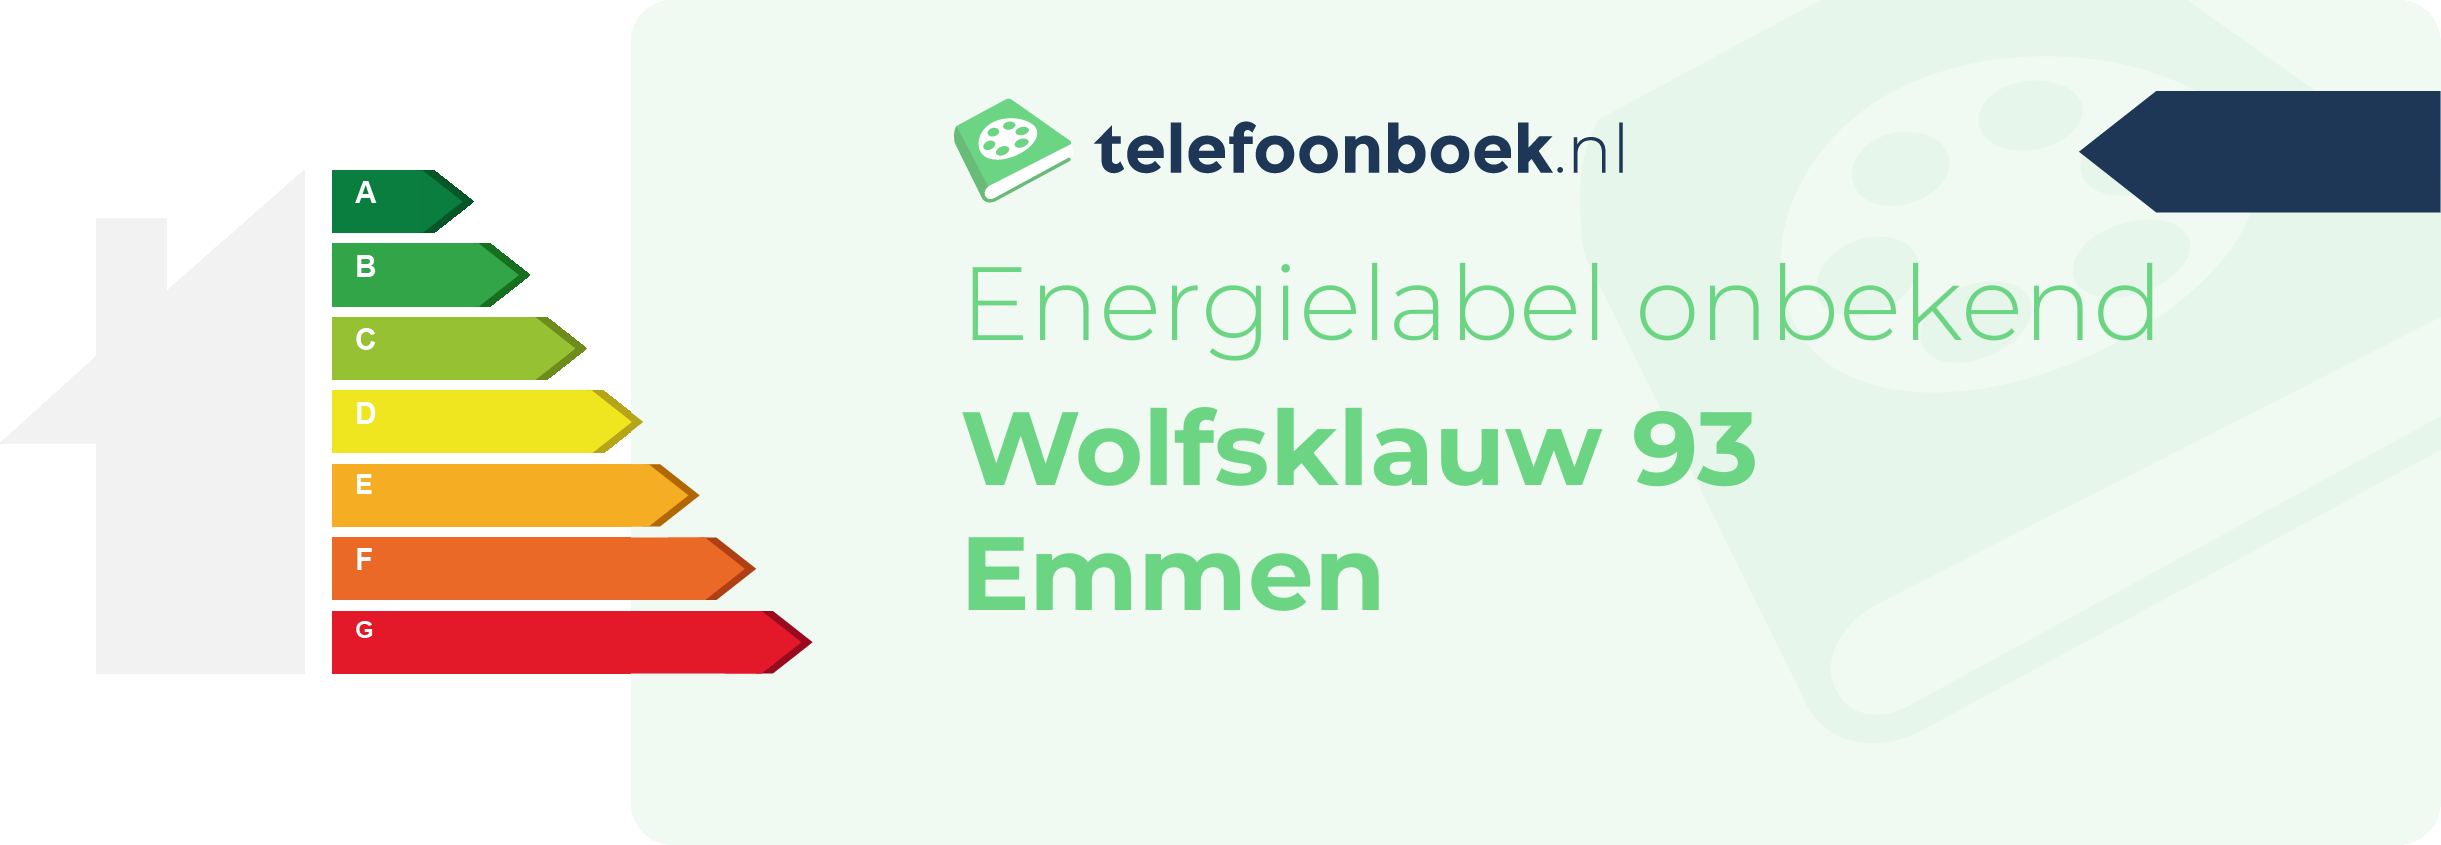 Energielabel Wolfsklauw 93 Emmen